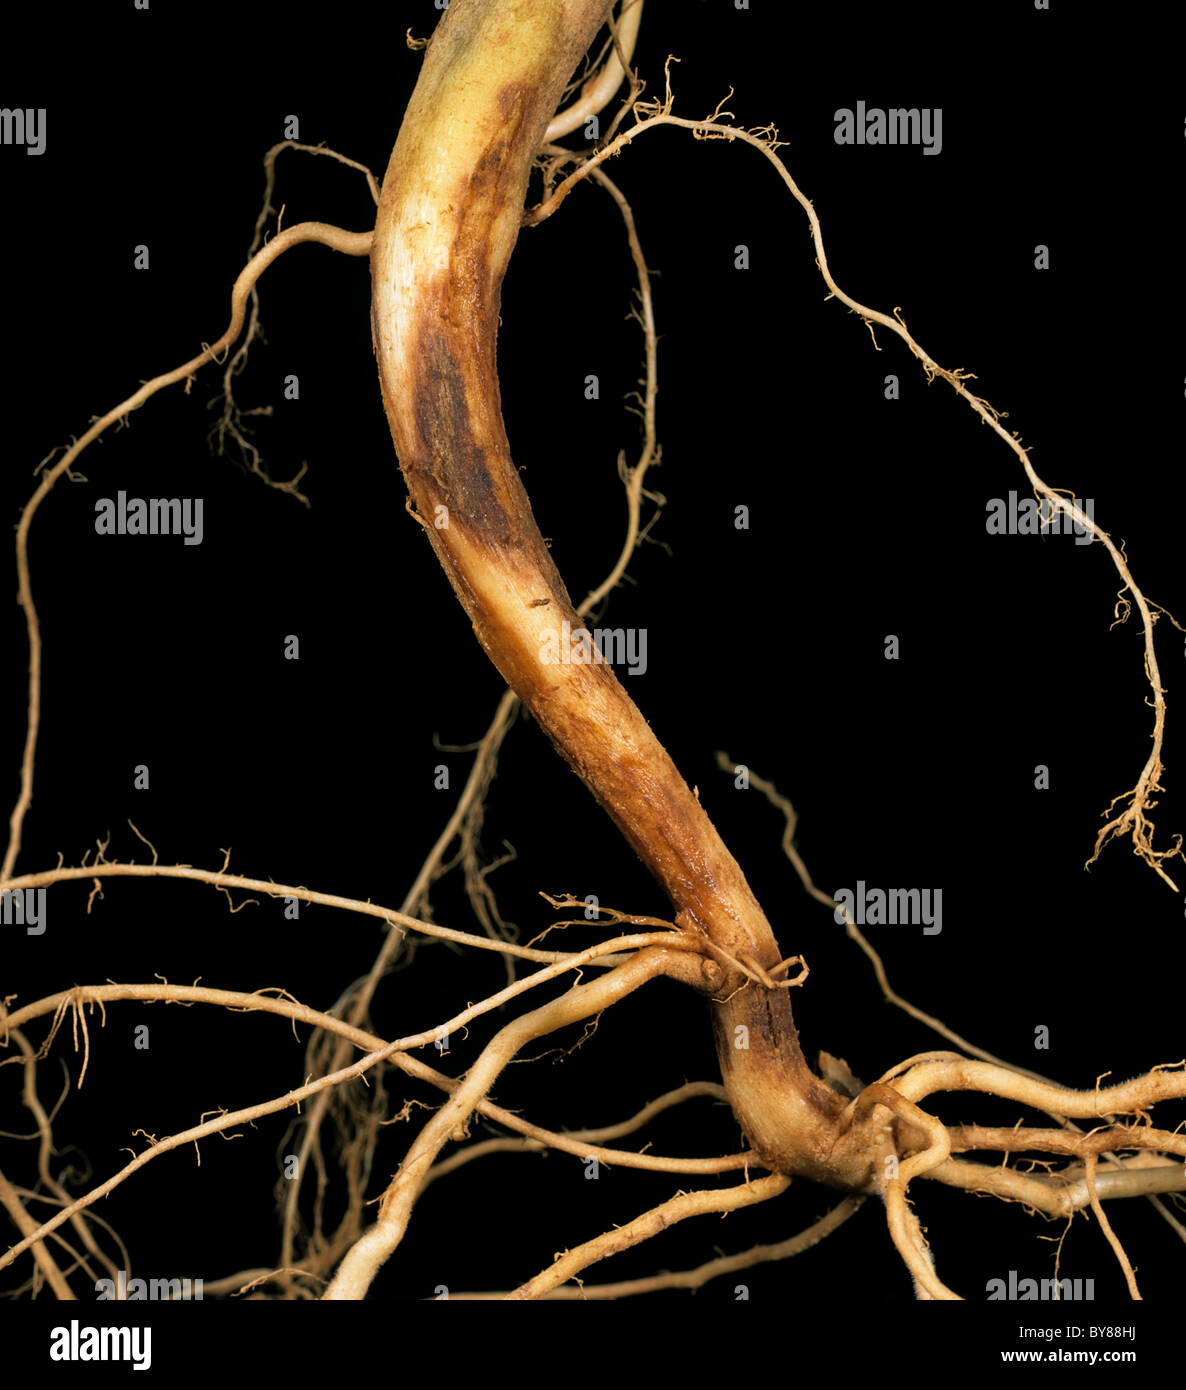 Stammen Sie Krebs (Rhizoctonia Solani) Läsionen an den Wurzeln und unteren Stamm eine Kartoffelpflanze Stockfoto